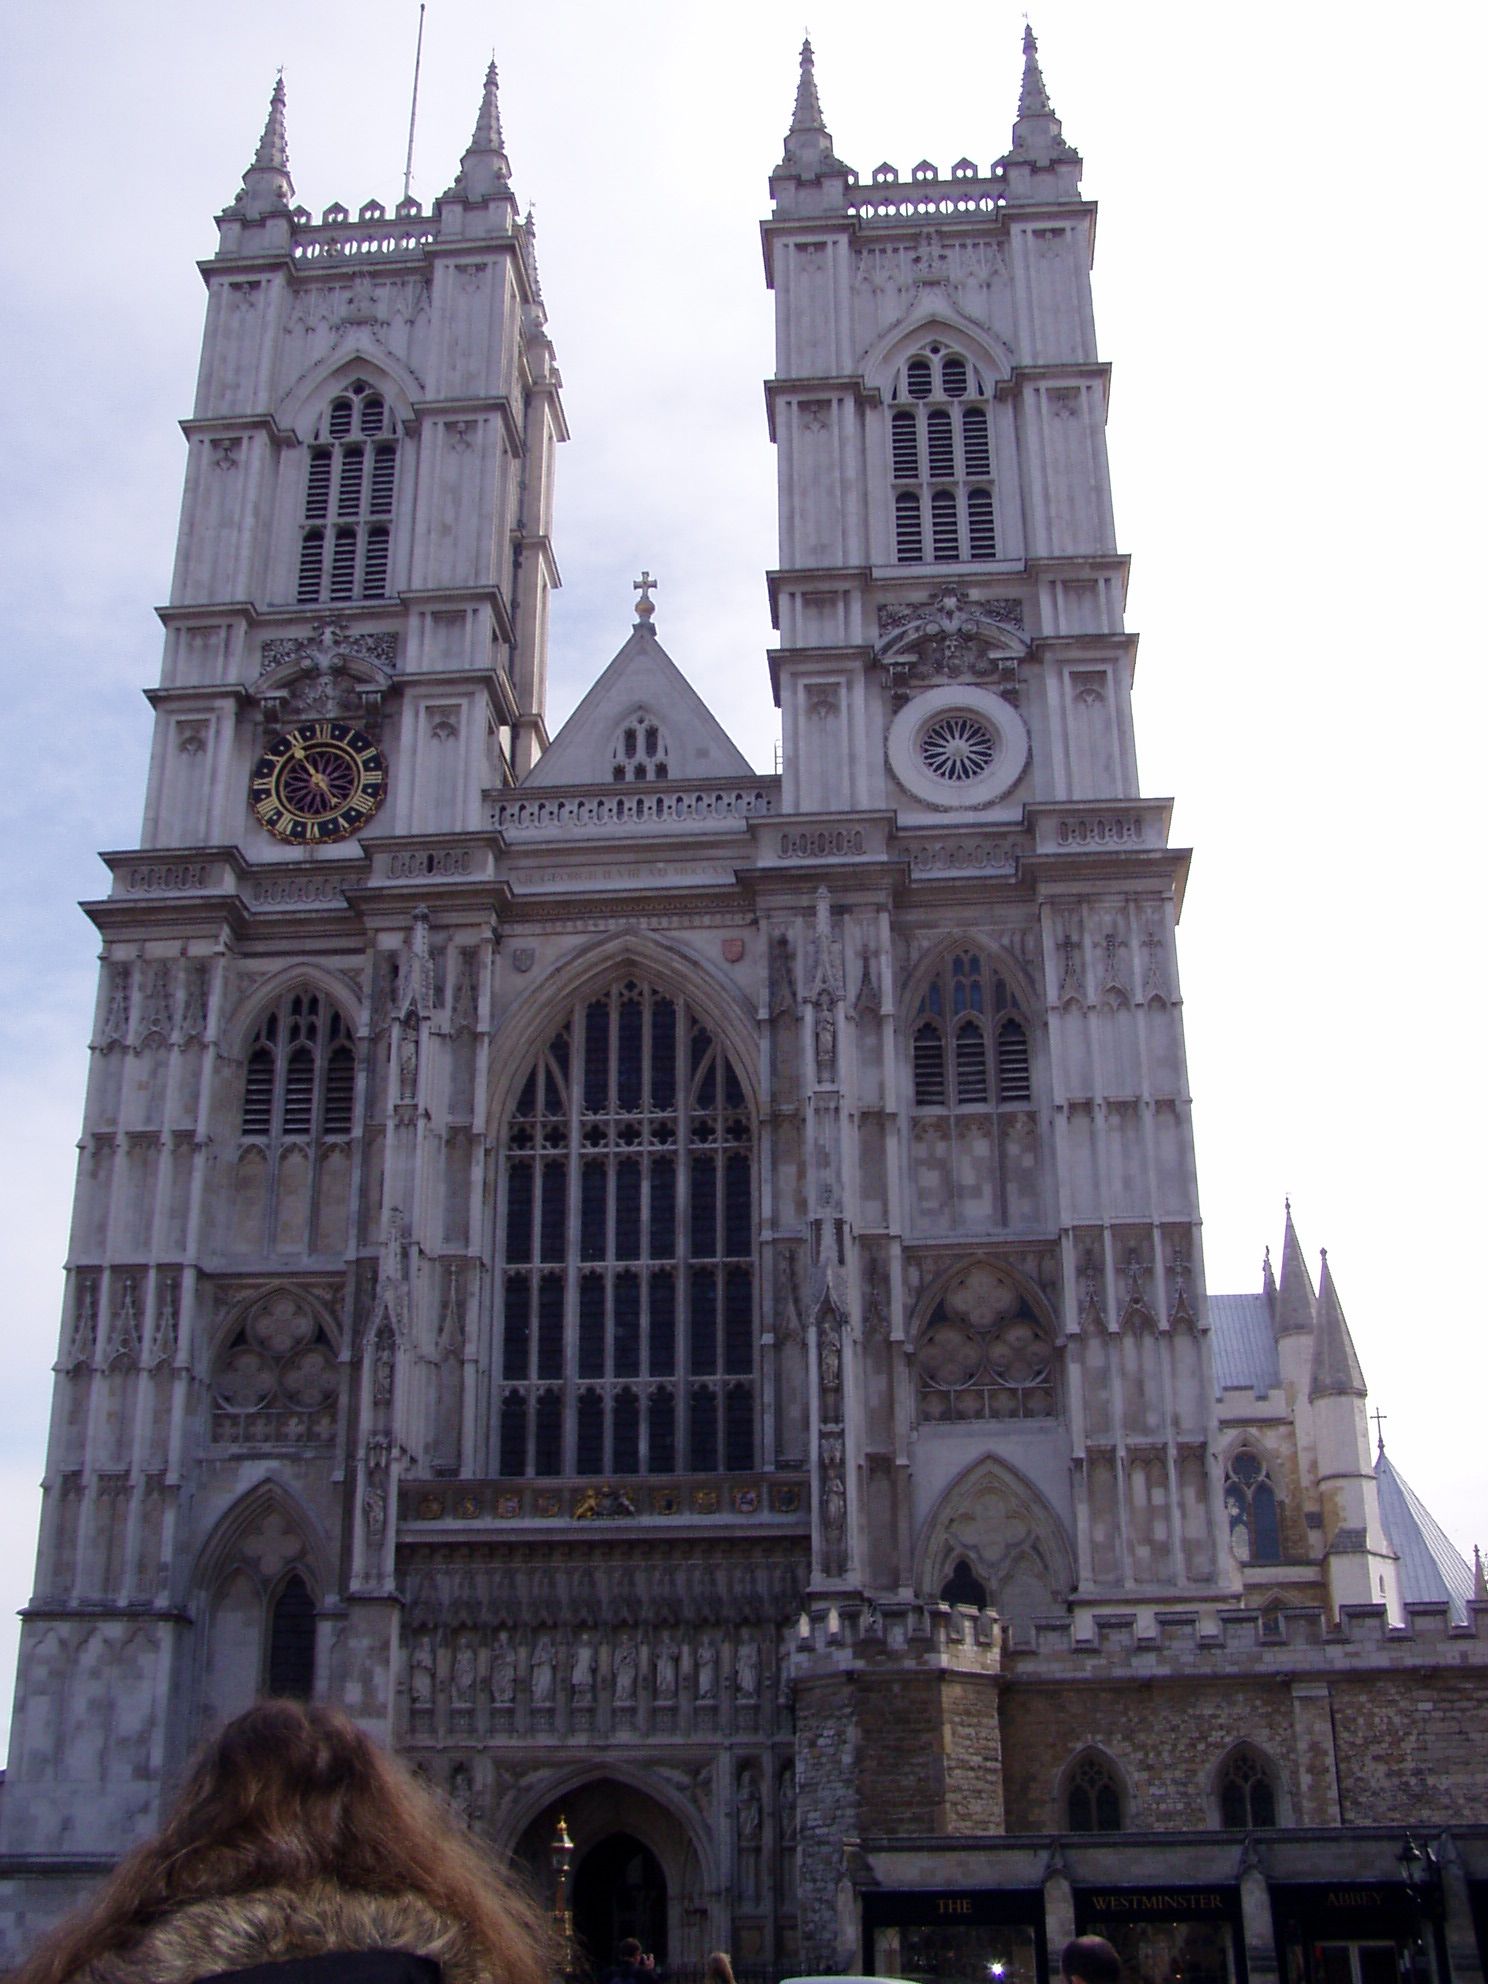 Londýn - Westminster Abbey